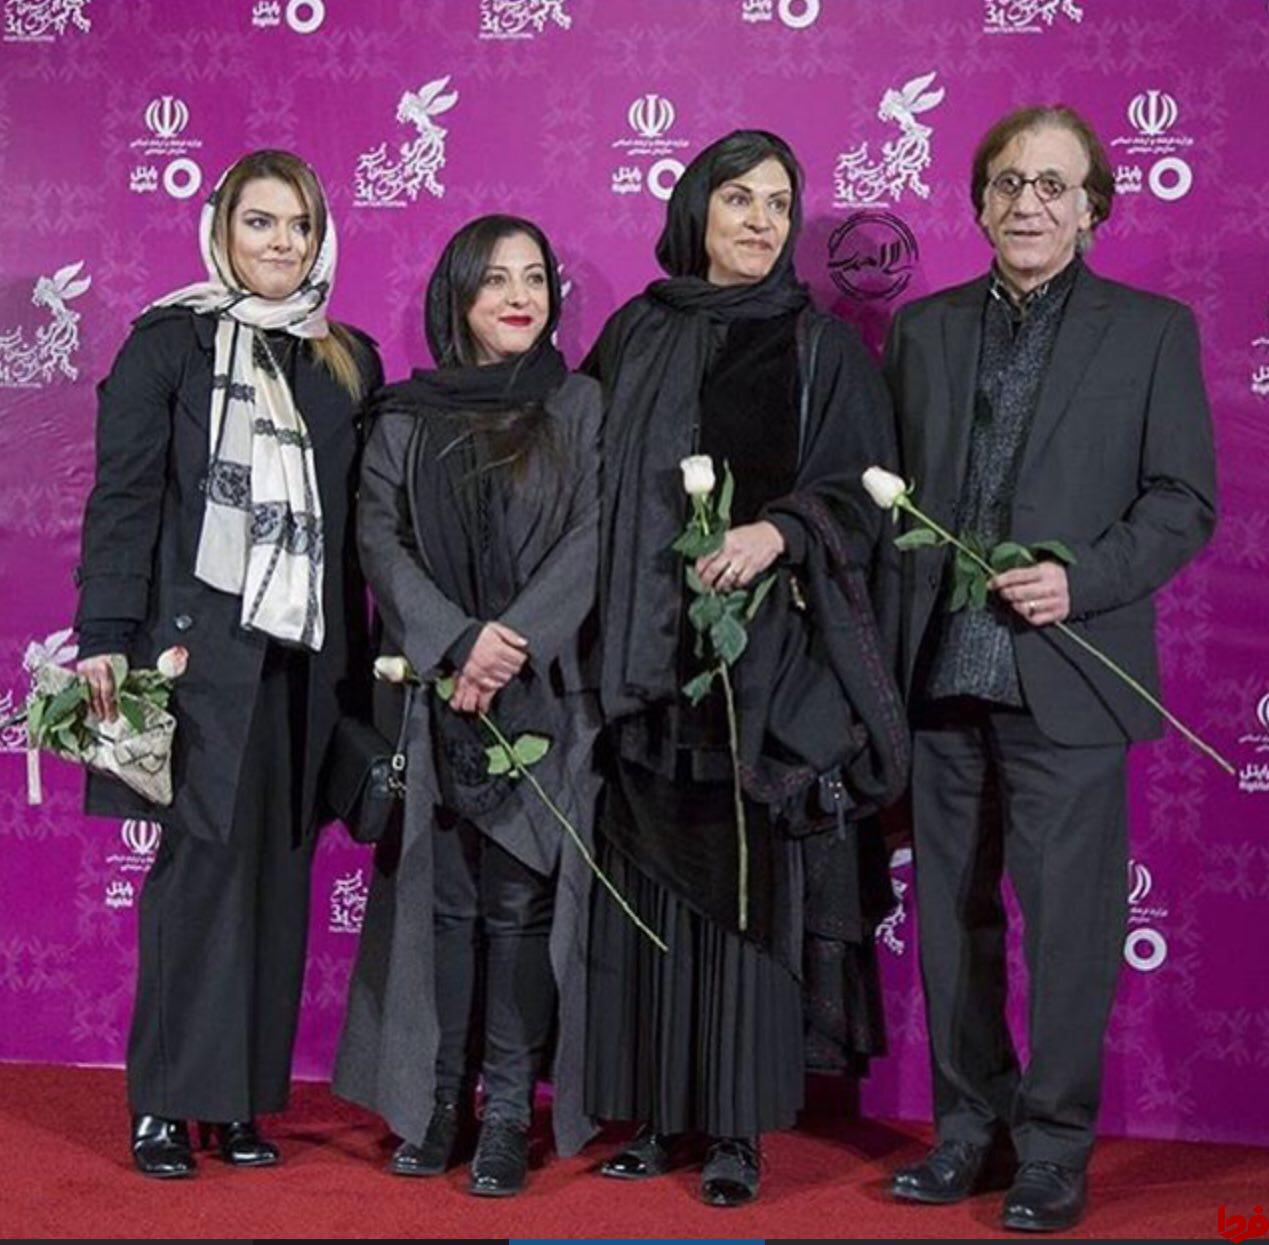  عکس/ رویا تیموریان در کنار همسر و دخترانش روی فرش قرمز